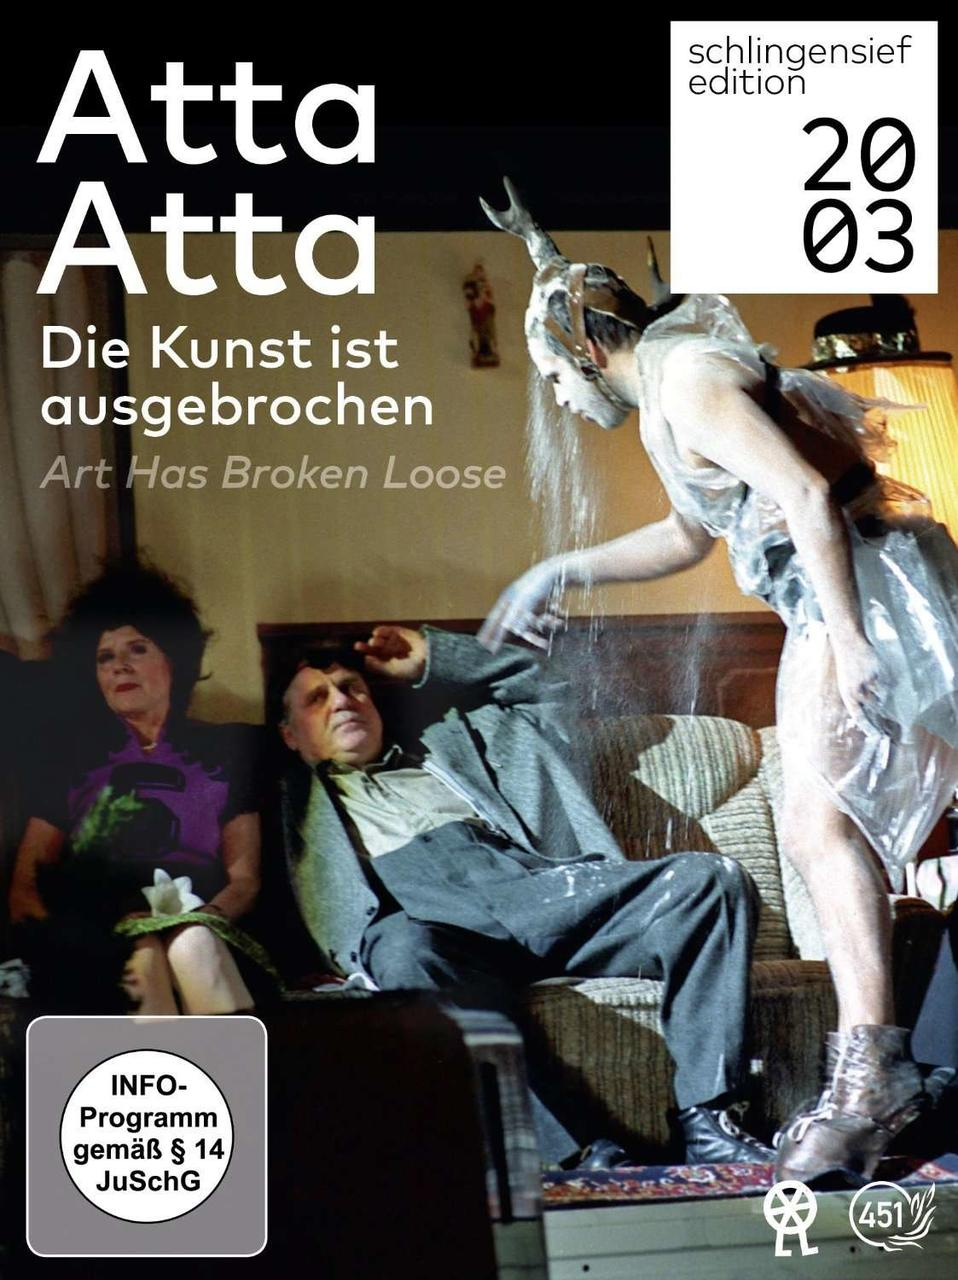 Atta Atta - Art has Die / ist loose broken Kunst ausgebrochen DVD